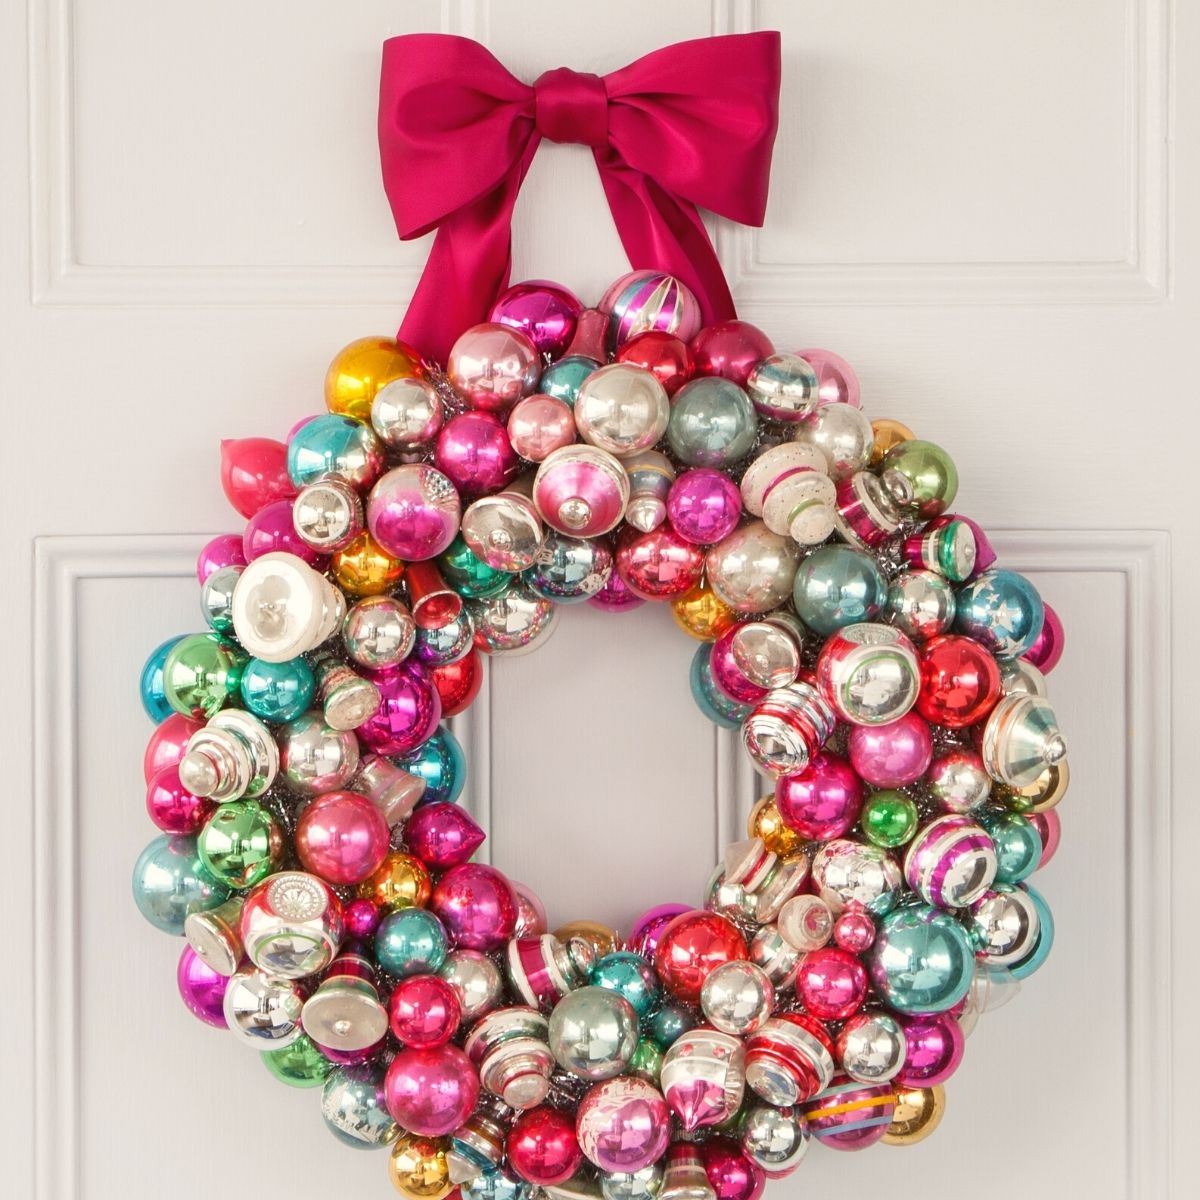 Vintage Ornament wreaths on Thursd